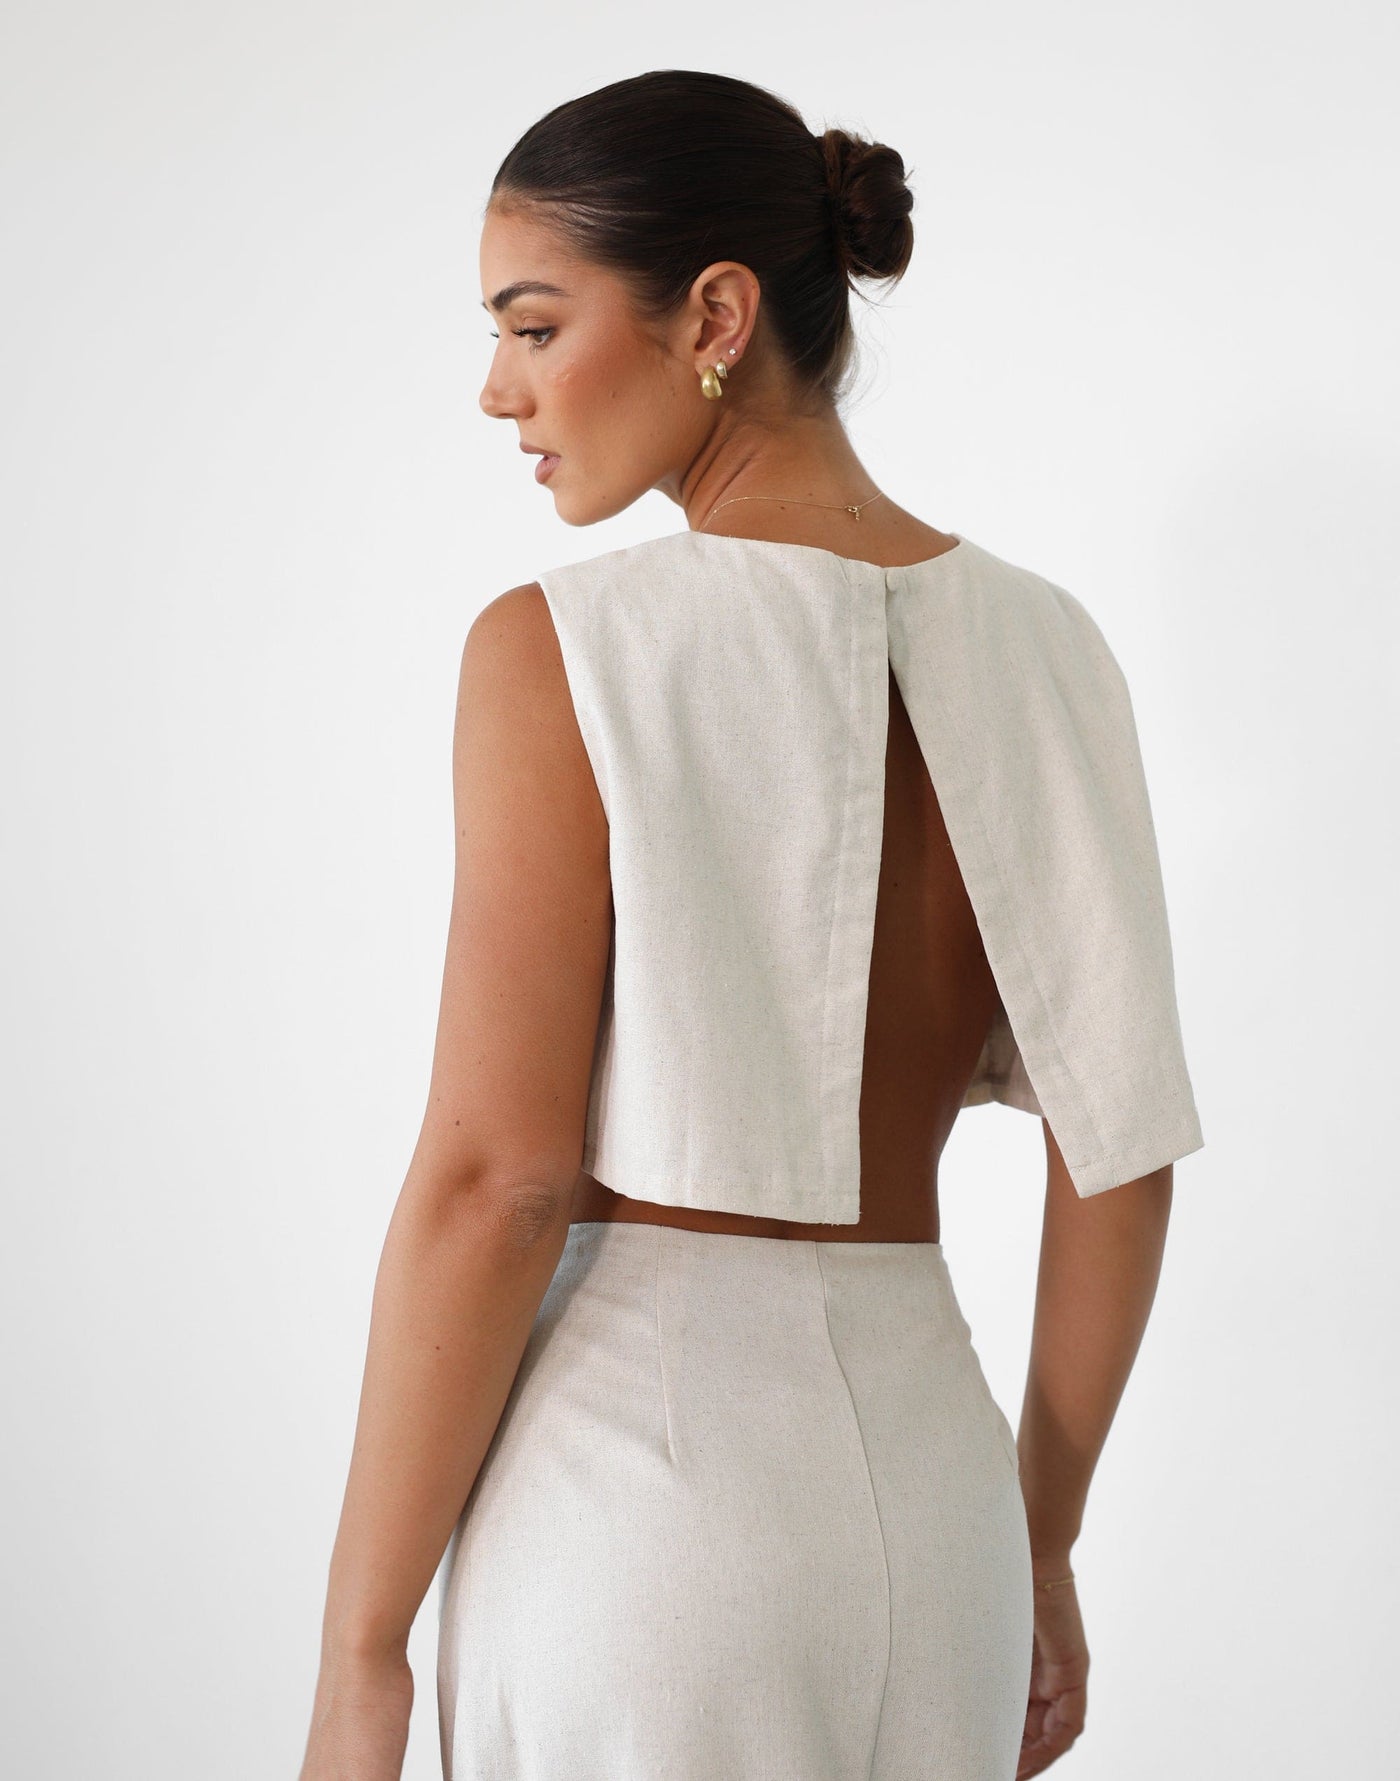 Como Linen Top (Oat) - Open Back Linen Top - Women's Top - Charcoal Clothing